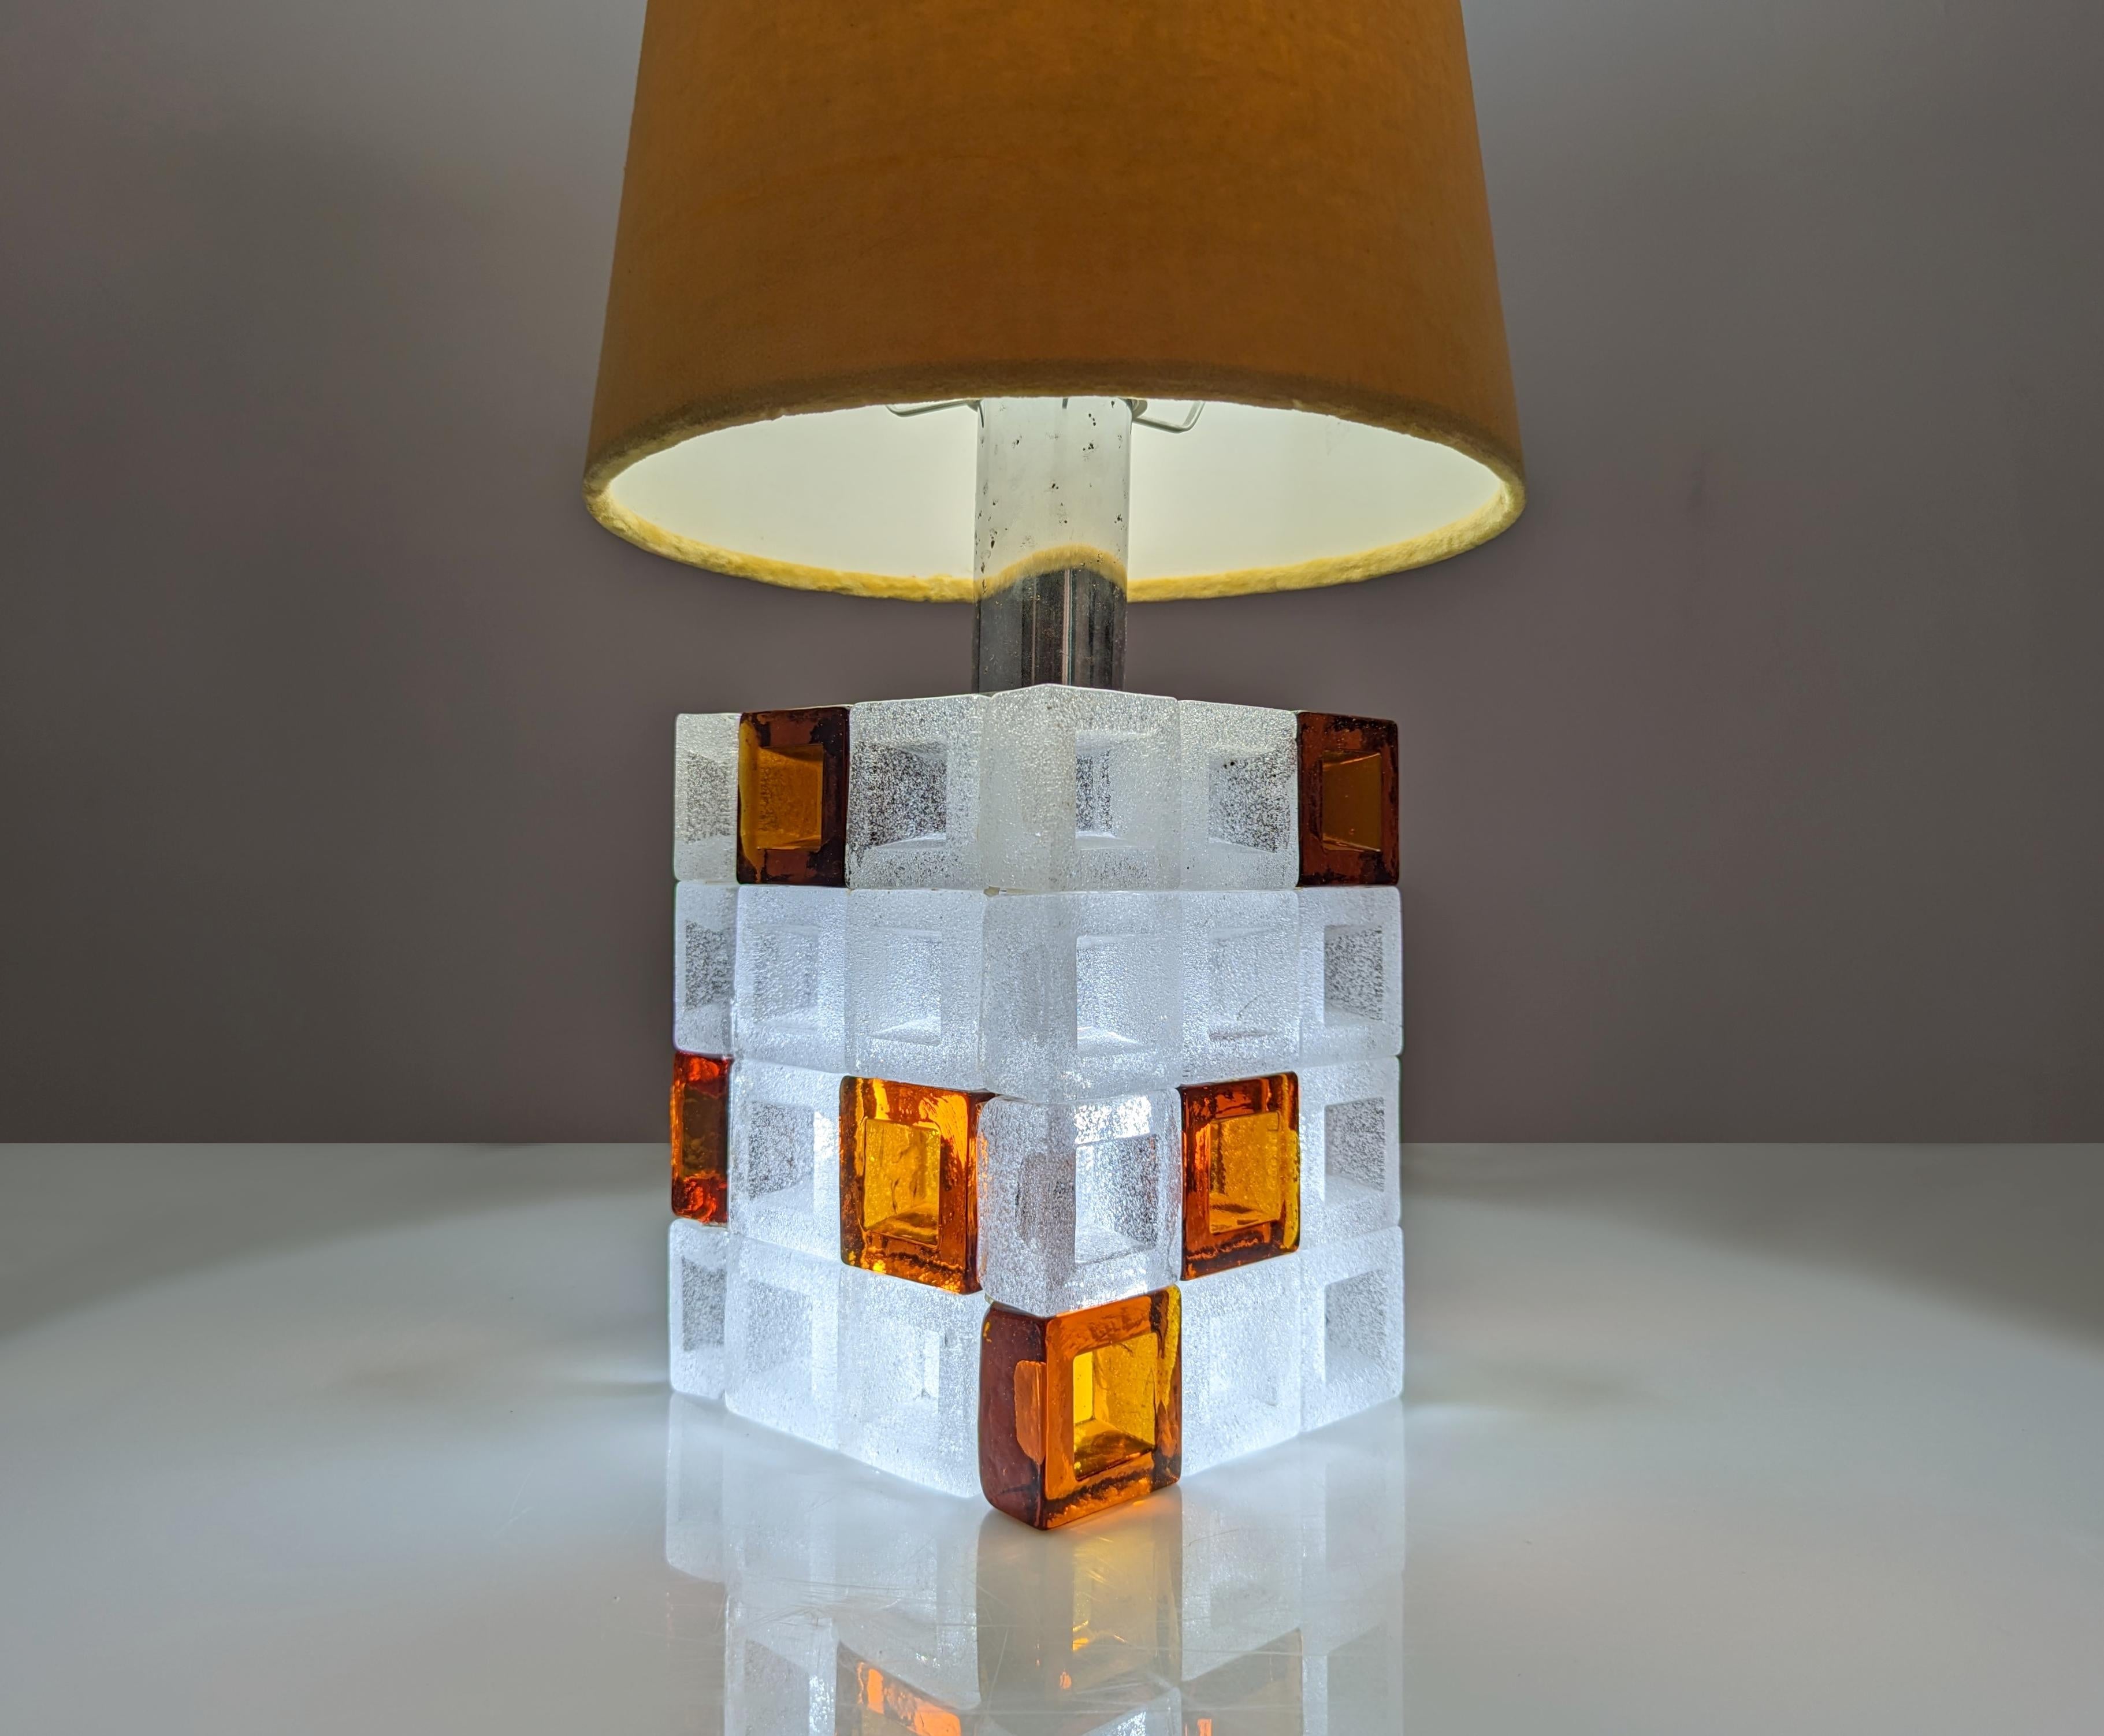 Plongez dans l'âge d'or du design italien avec cette lampe exquise d'Albano Poli, un chef-d'œuvre intemporel qui allie le savoir-faire artisanal du verre de Murano à la vision créative des années 1960. Les cubes de verre fusionnés dans les tons